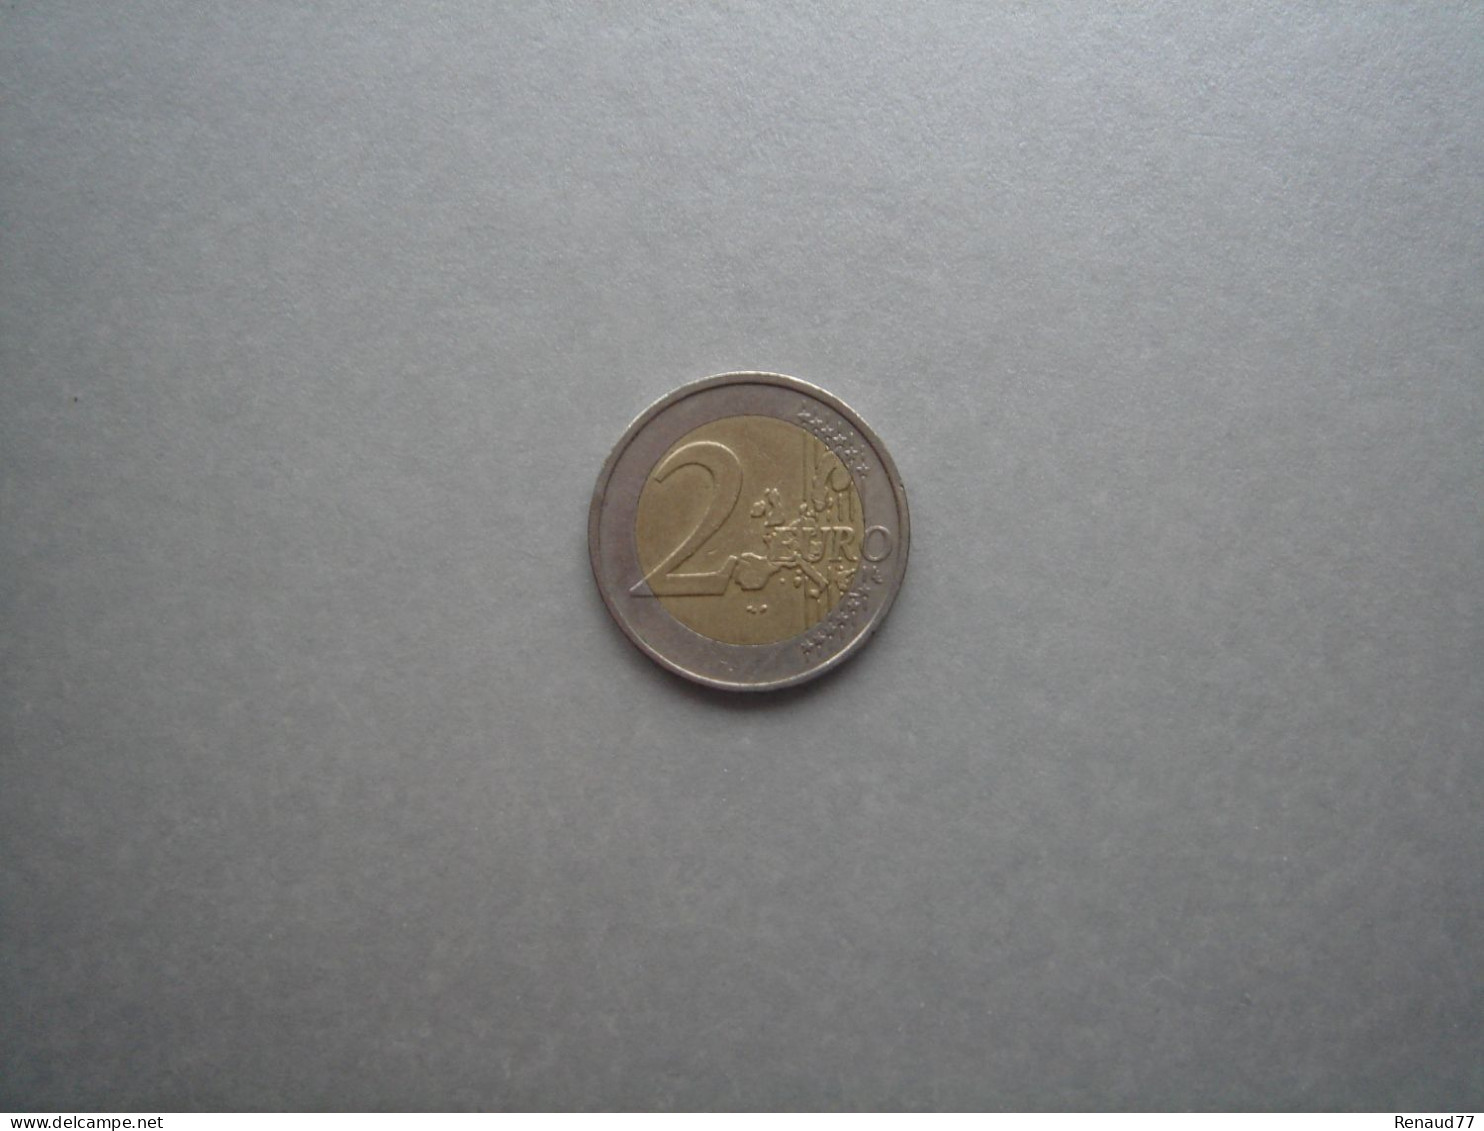 2 Euro Kursmünze 2002 Griechenland / Greece - Griechenland